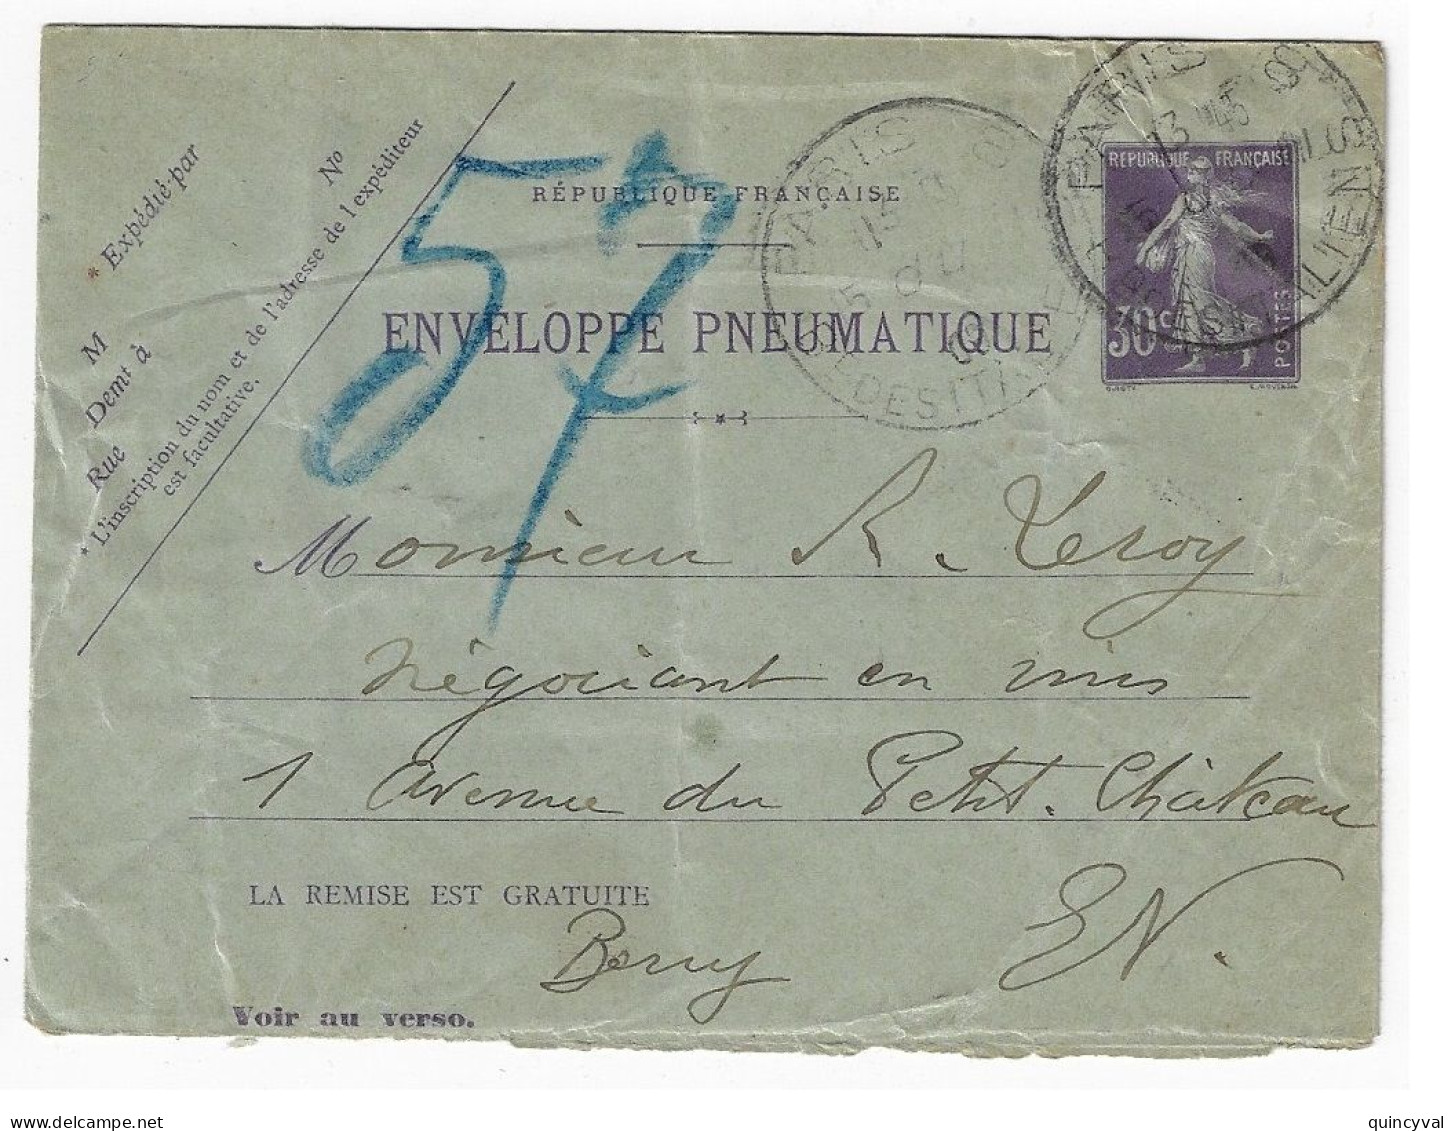 PARIS 8 Italiens Pneumatique Enveloppe Entier 30c Semeuse Violet Yv EPP2 Storch K2 Verso 16 Lignes 20 Villes Ob 11 1909 - Rohrpost